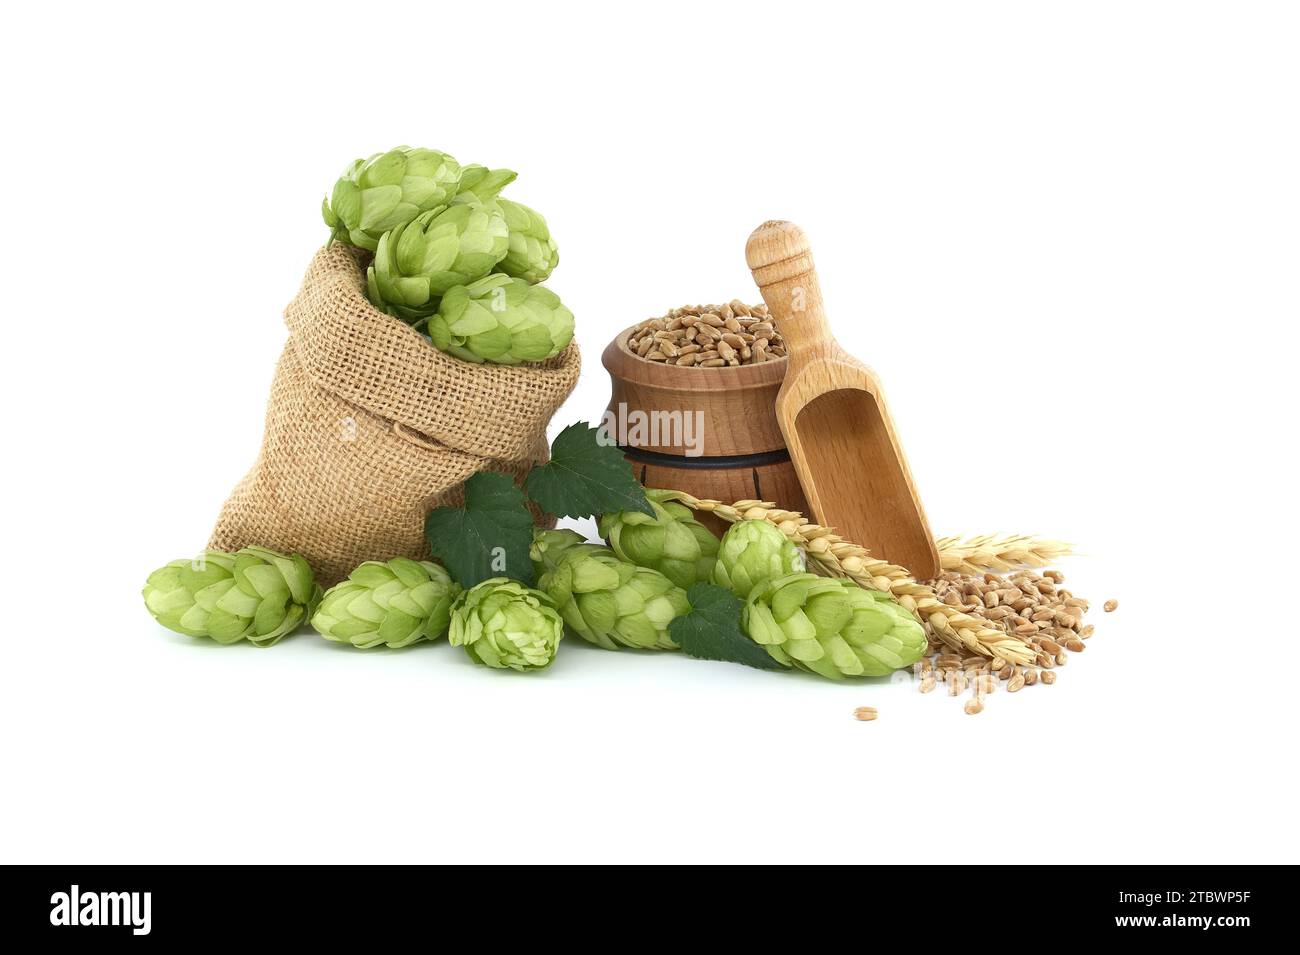 Bière ou boisson encore vie avec des cônes de houblon vert frais qui se répande d'un sac hessien près d'un baril avec grain de blé isolé sur fond blanc Banque D'Images